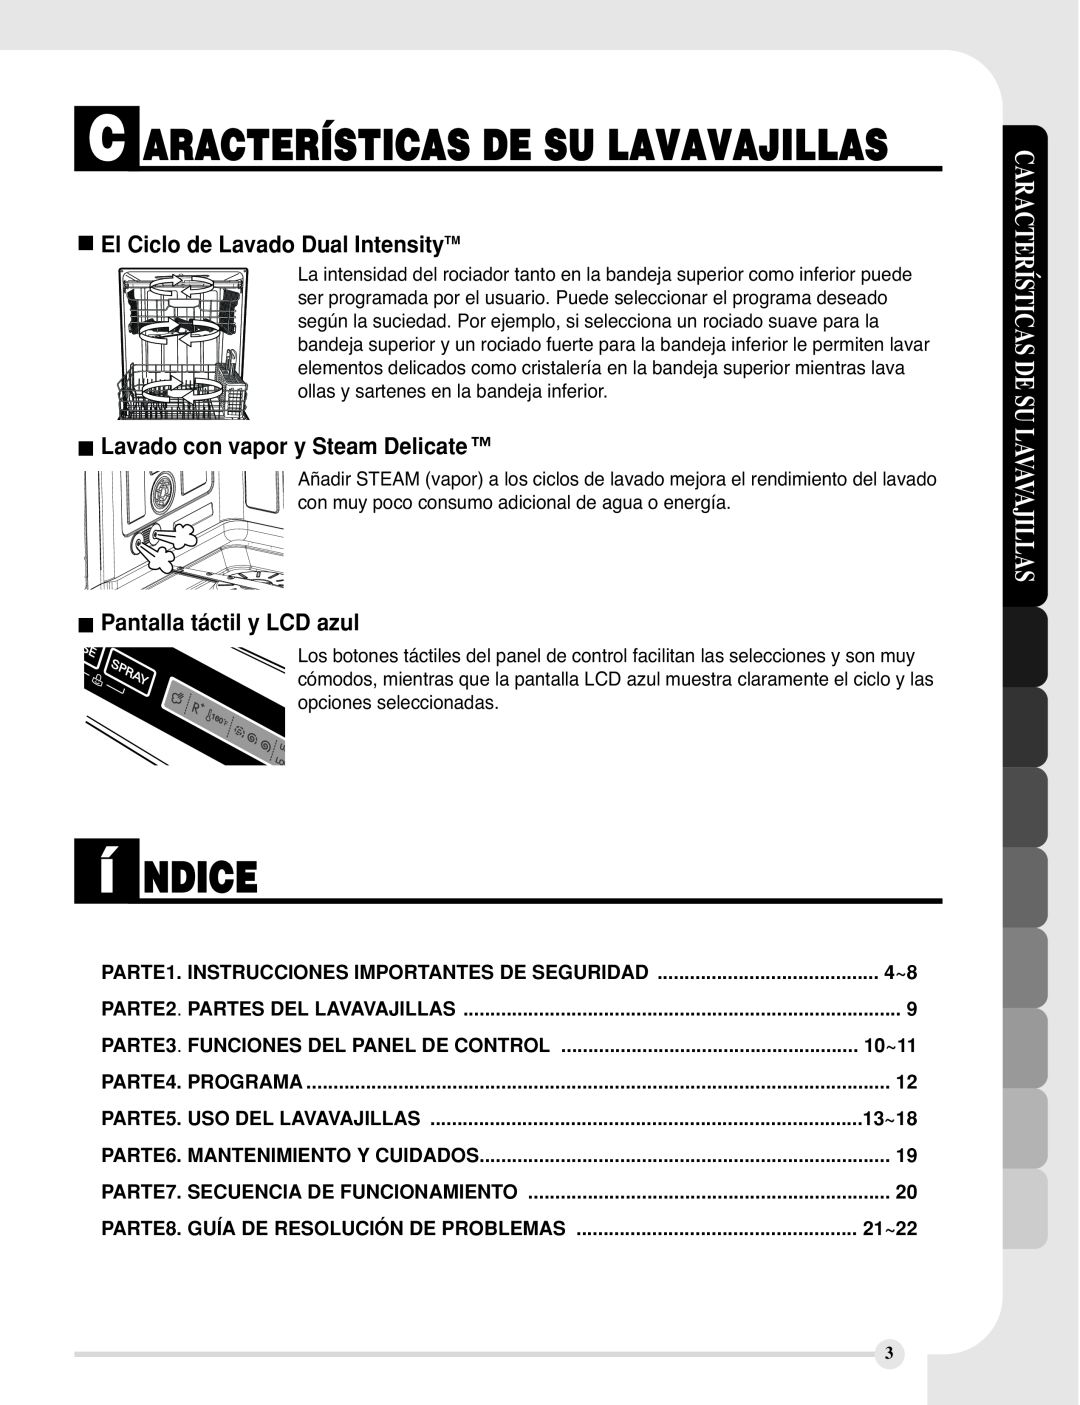 LG Electronics LDF9810BB í NDICE, El Ciclo de Lavado Dual IntensityTM, Lavado con vapor y Steam Delicate, 10~11, 13~18 